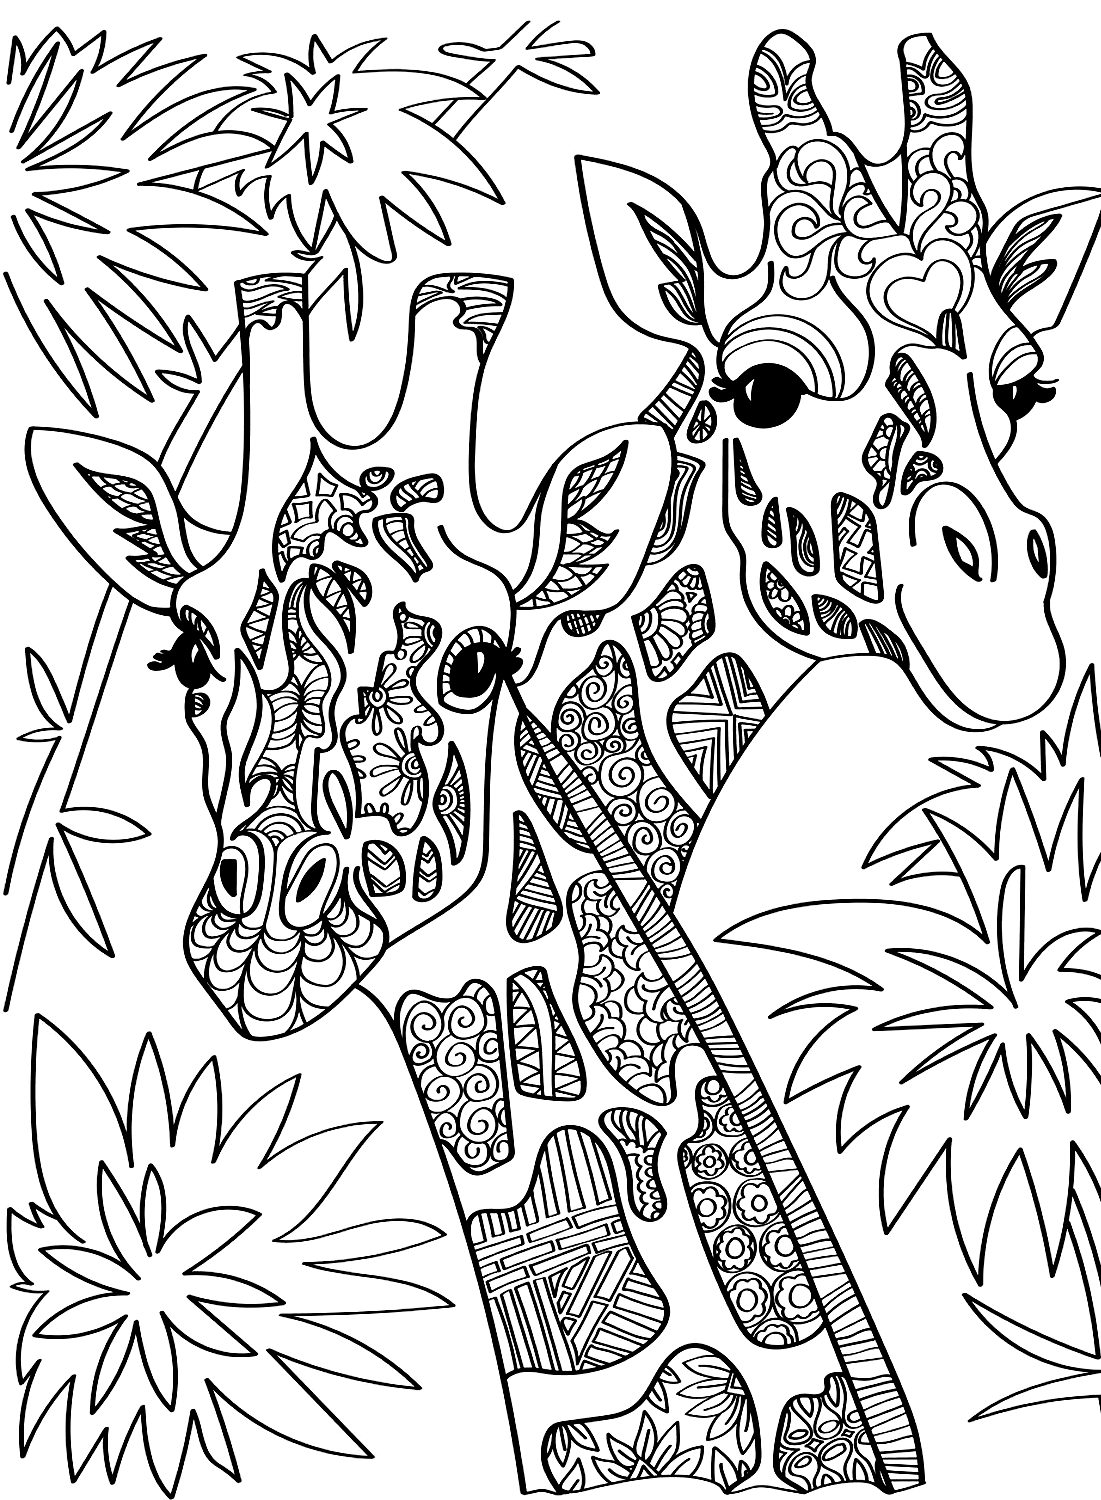 Giraffen kleurenpagina voor volwassenen van Giraffen